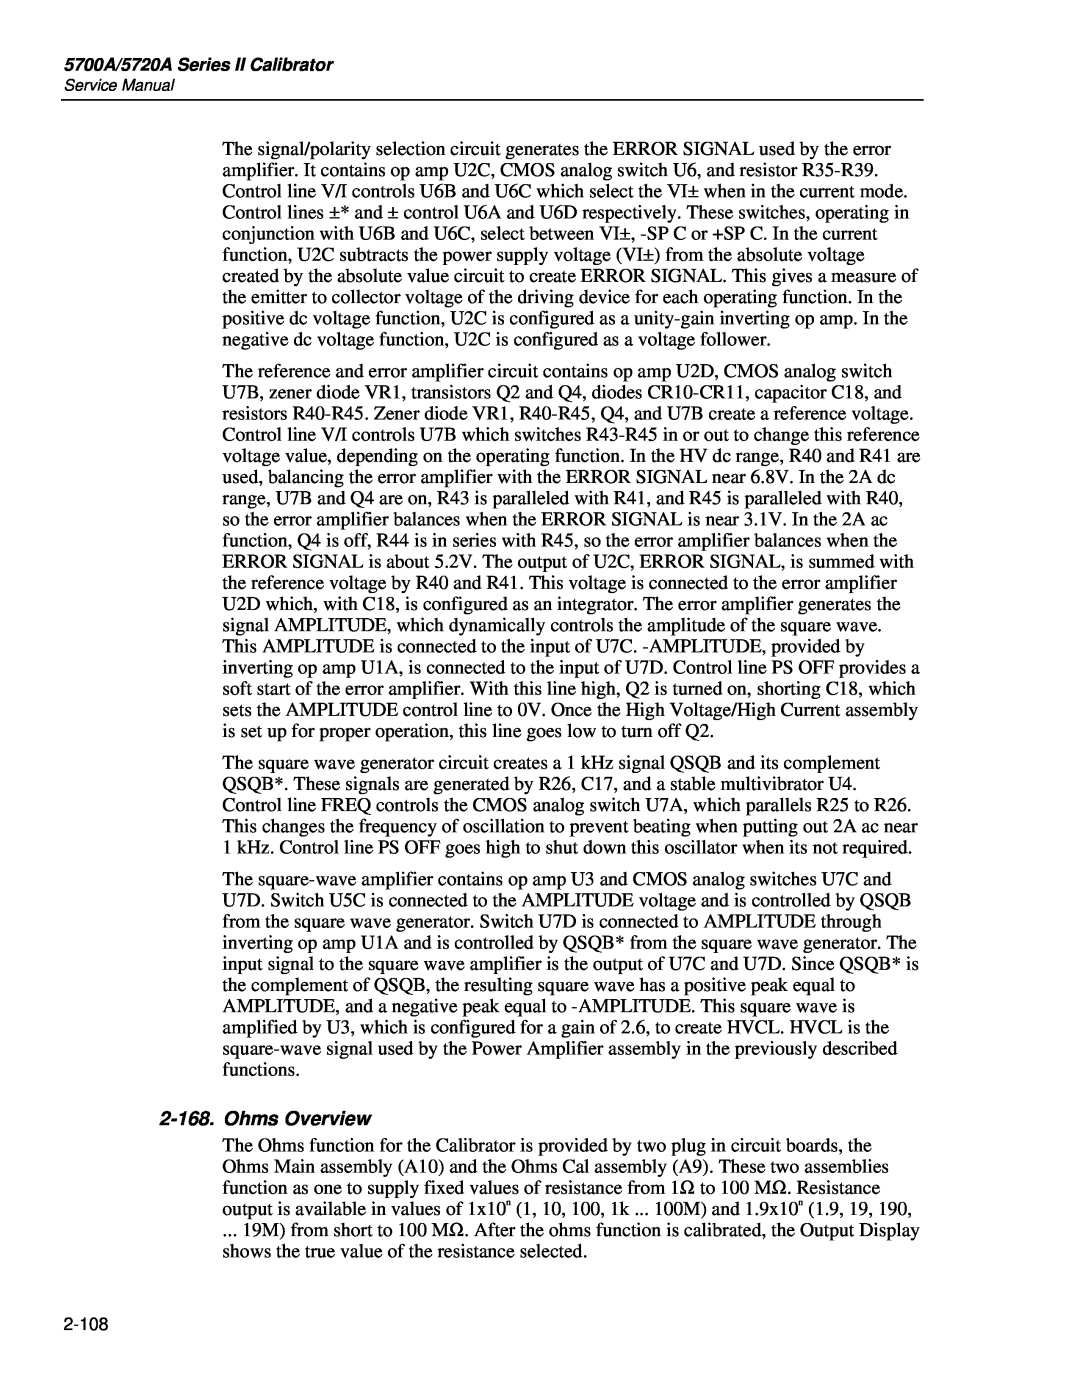 Fluke 5720A service manual Ohms Overview 